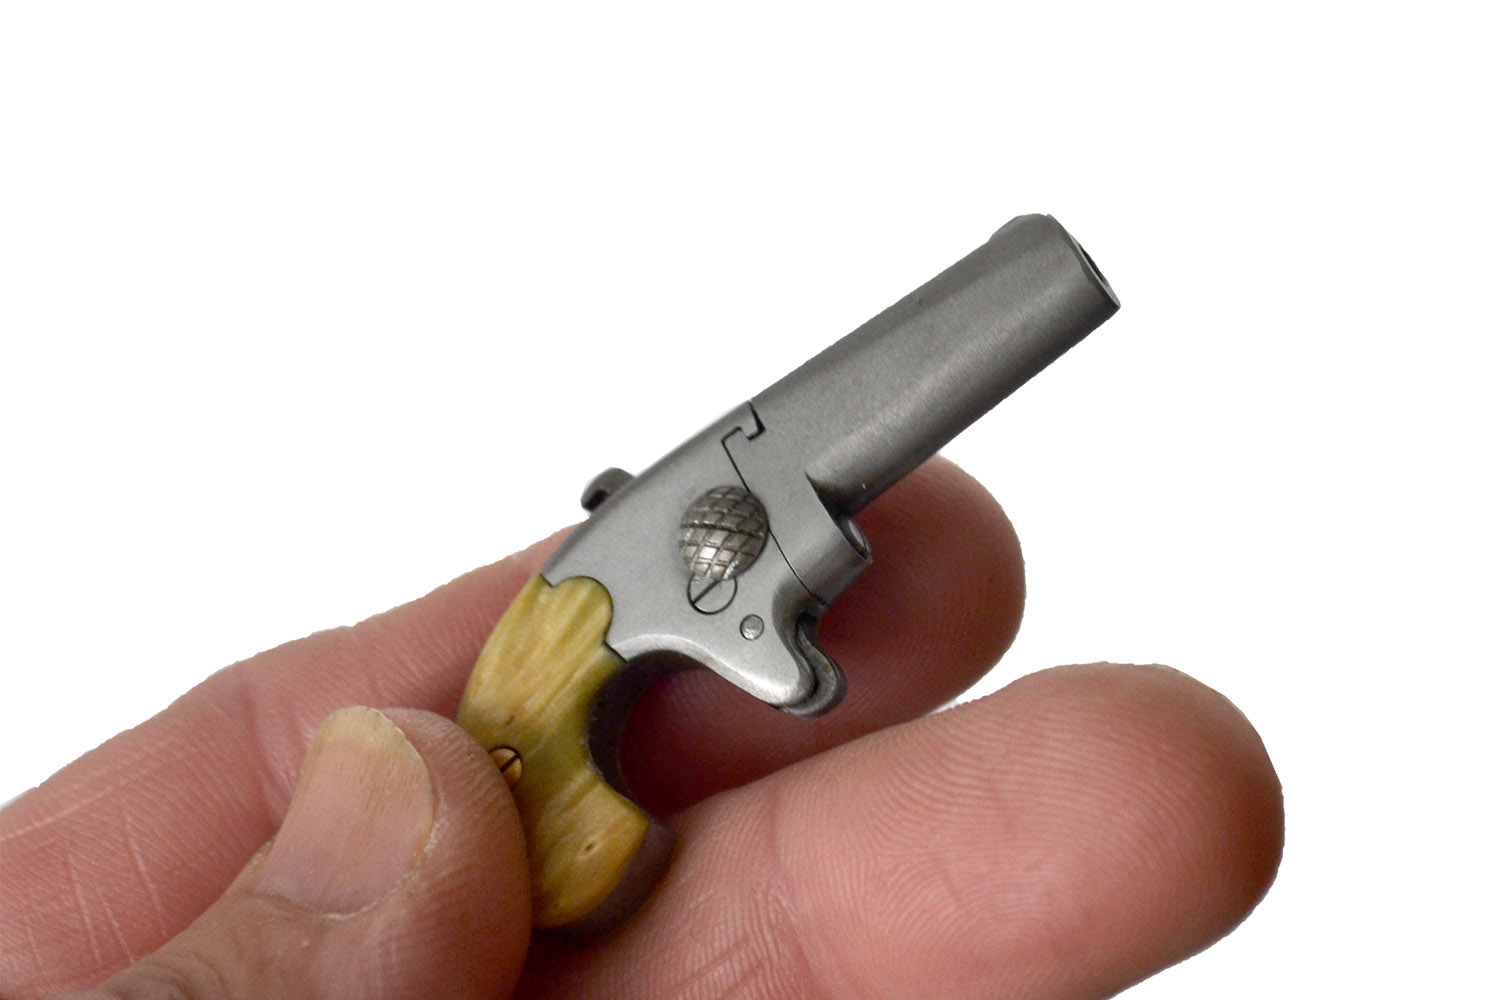 Pin Fire 2mm Southerner Derringer made PocketARS